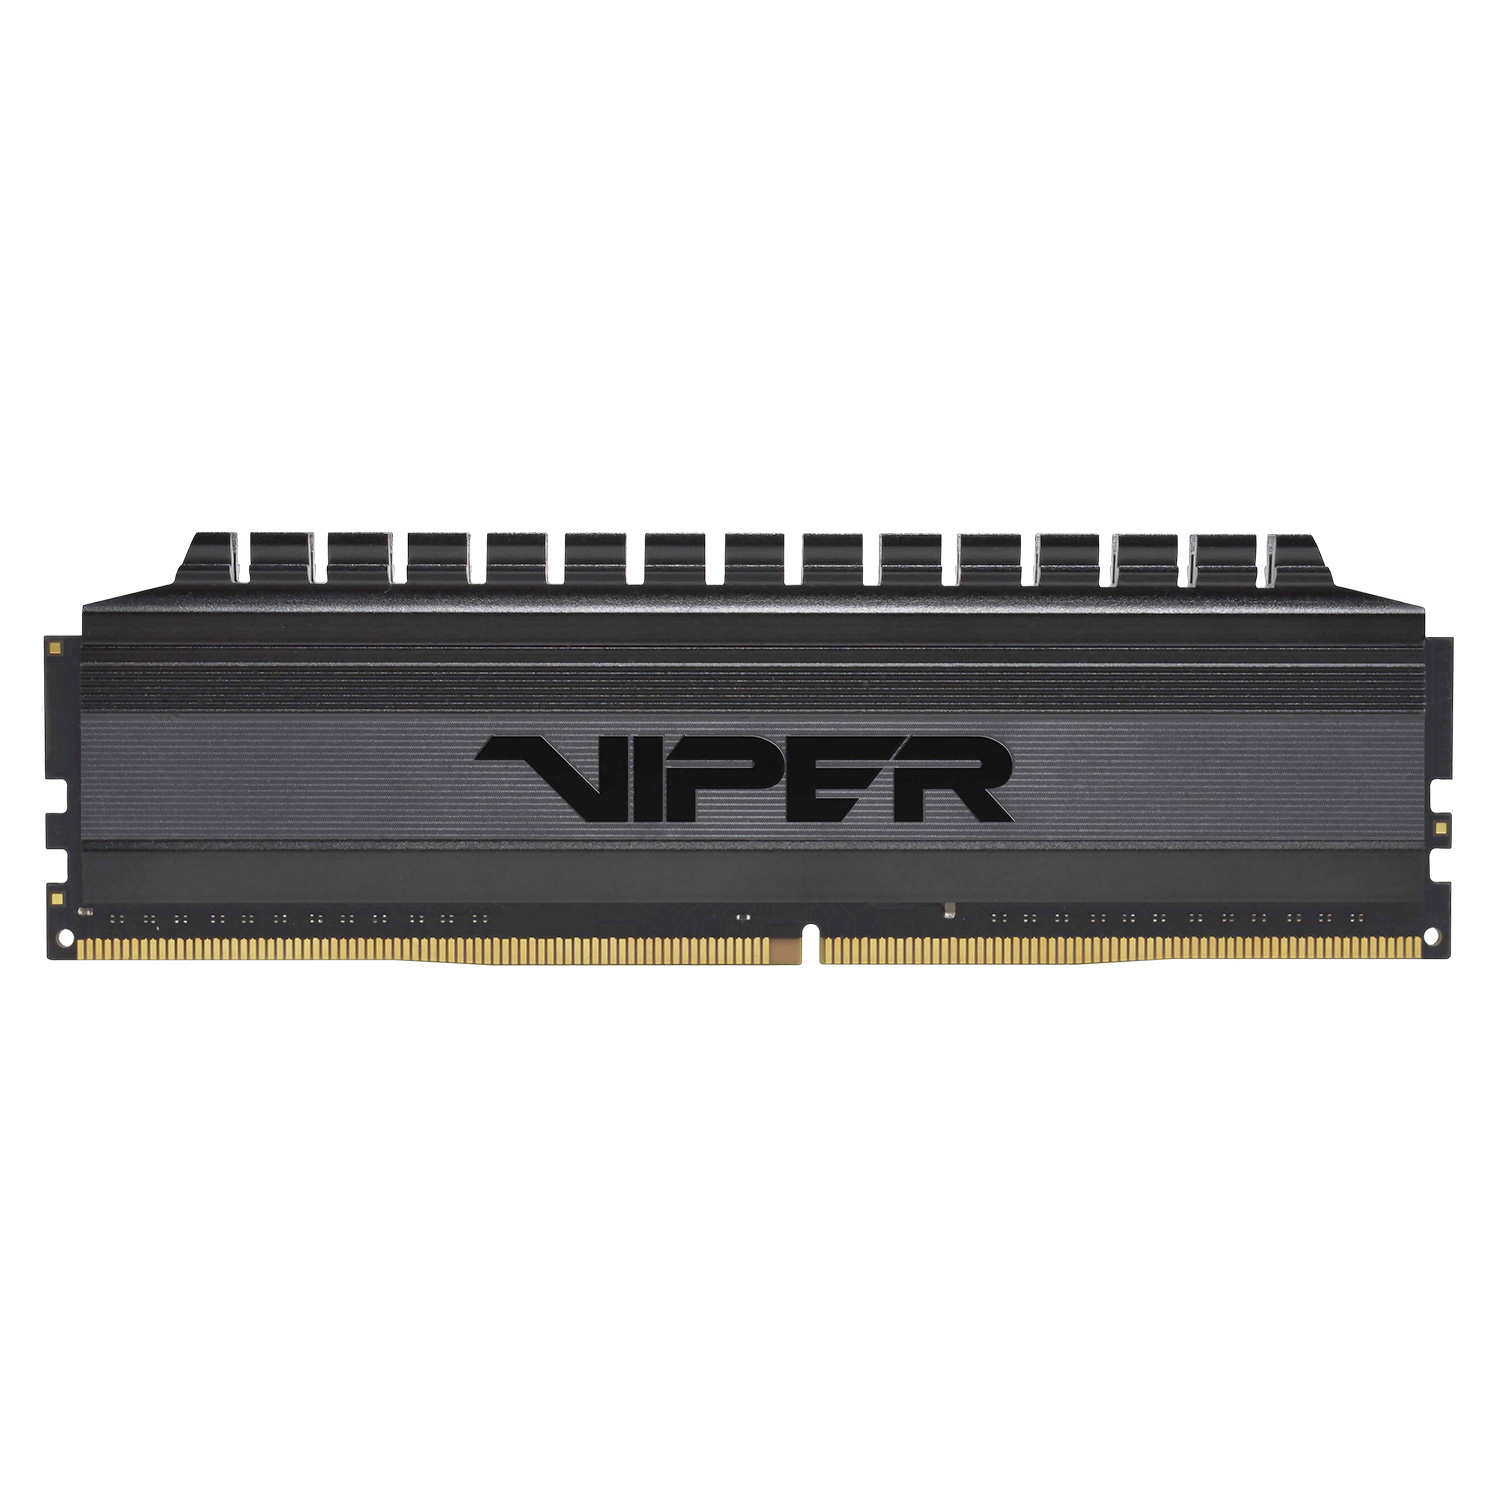 Memória RAM Patriot Viper 4 Blackout  / 2x16GB / DDR4 / 3200MHz - (PVB432G320C6K)